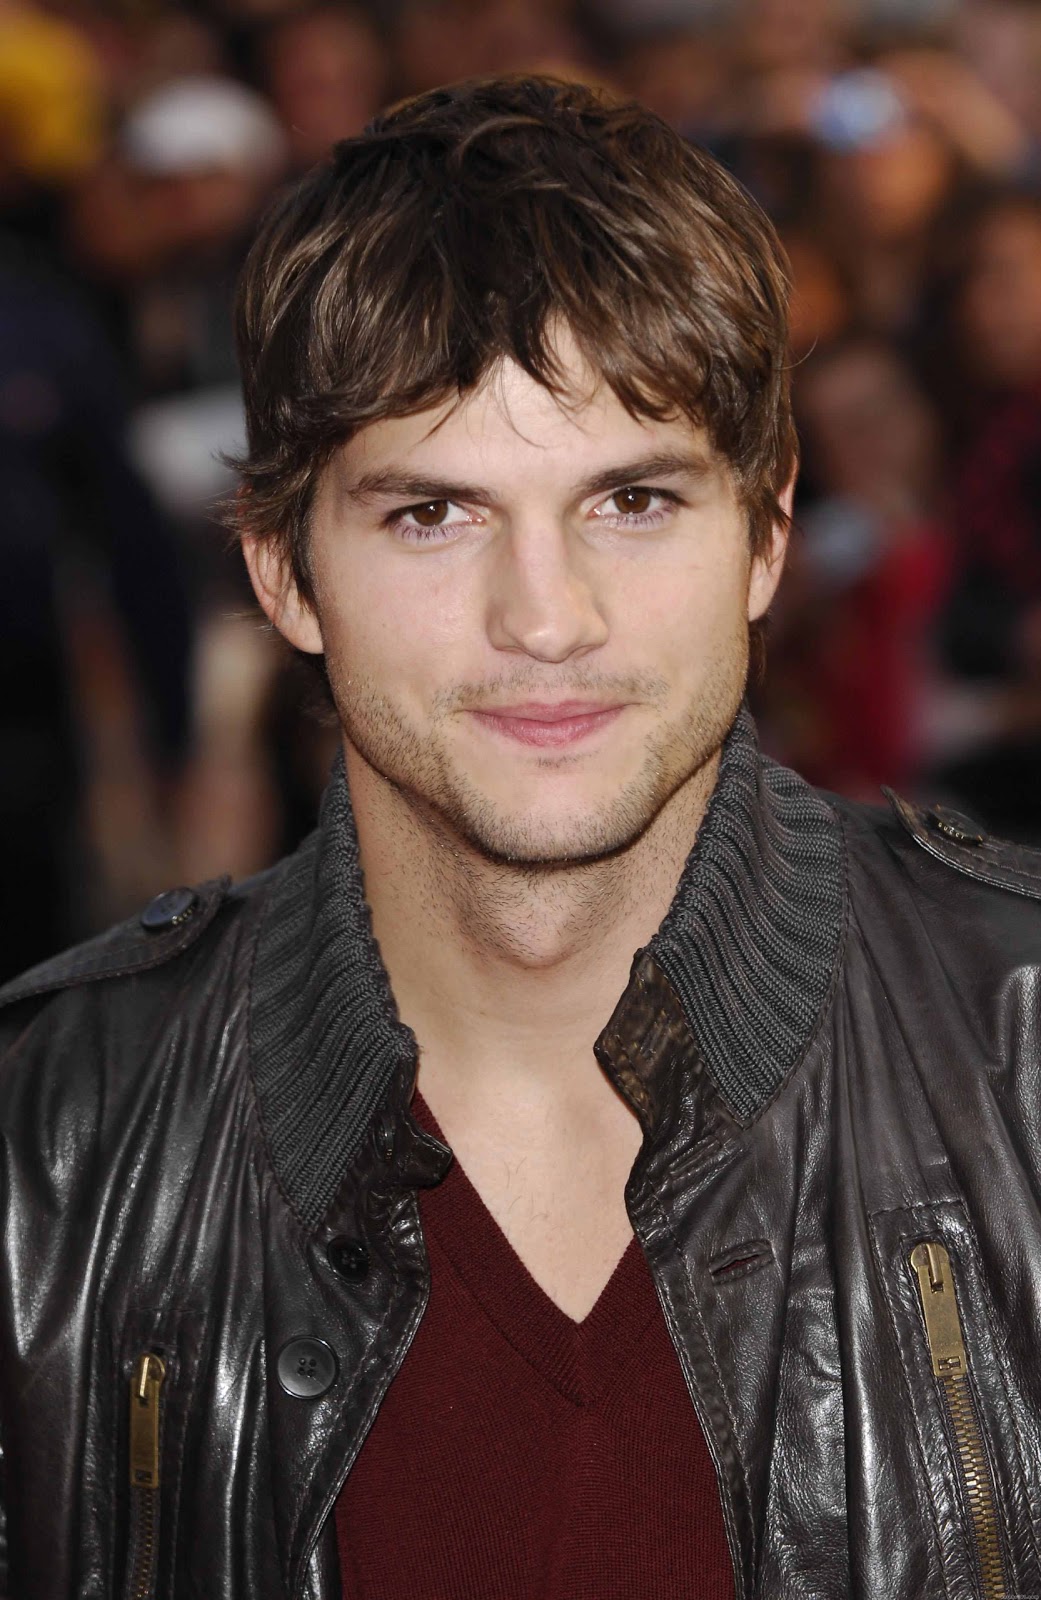 Celebrity: Ashton Kutcher